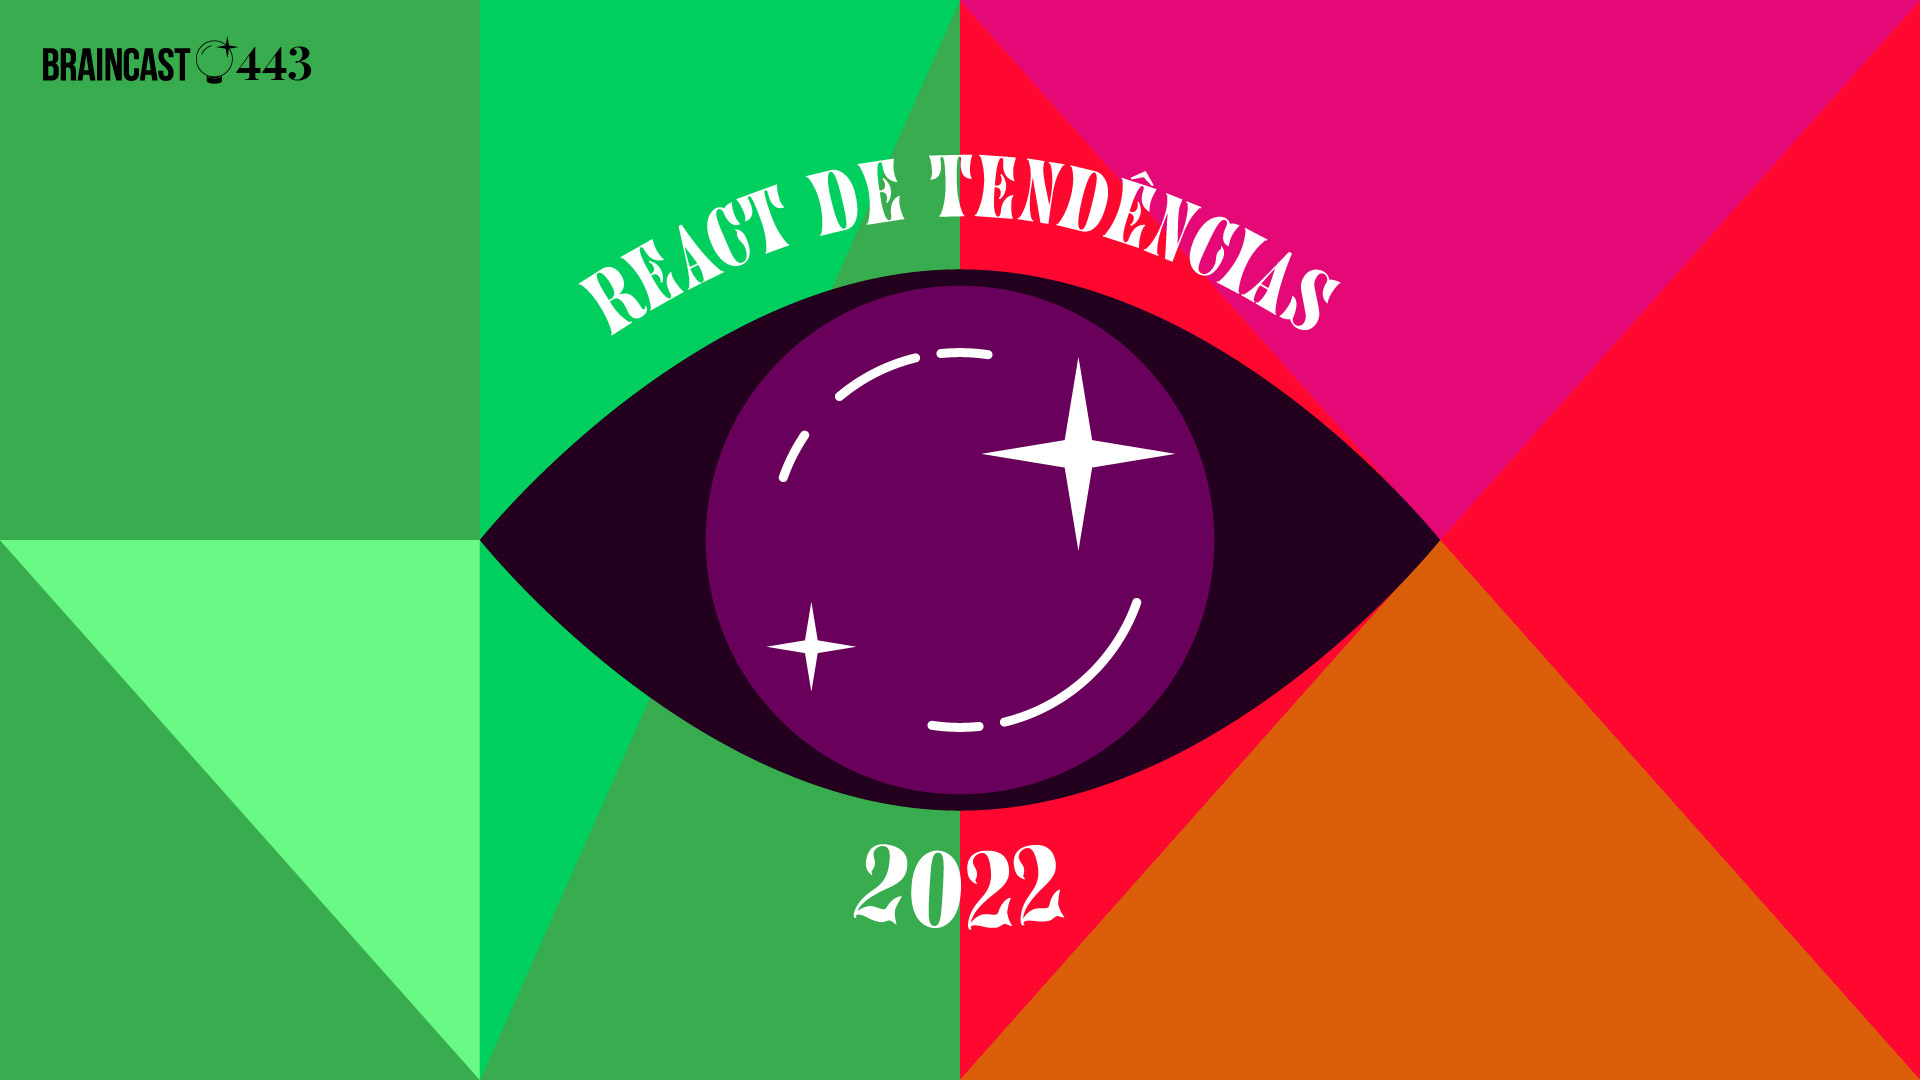 Braincast 443 – React de Tendências: o que vai acontecer (ou não) em 2022